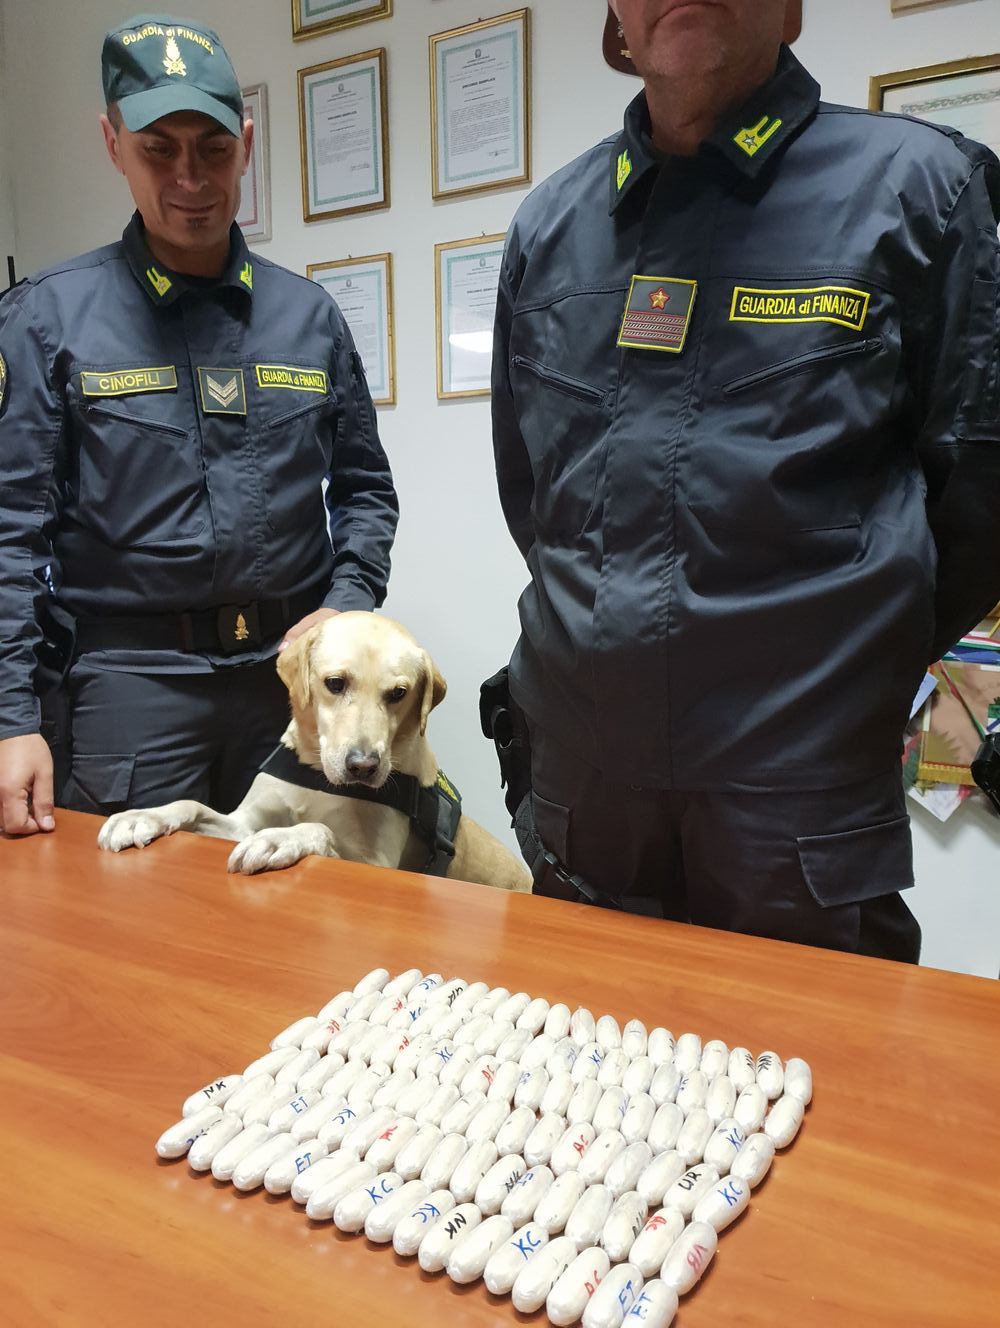 Sequestro hascisc cocaina Guardia di Finanza Ventimiglia